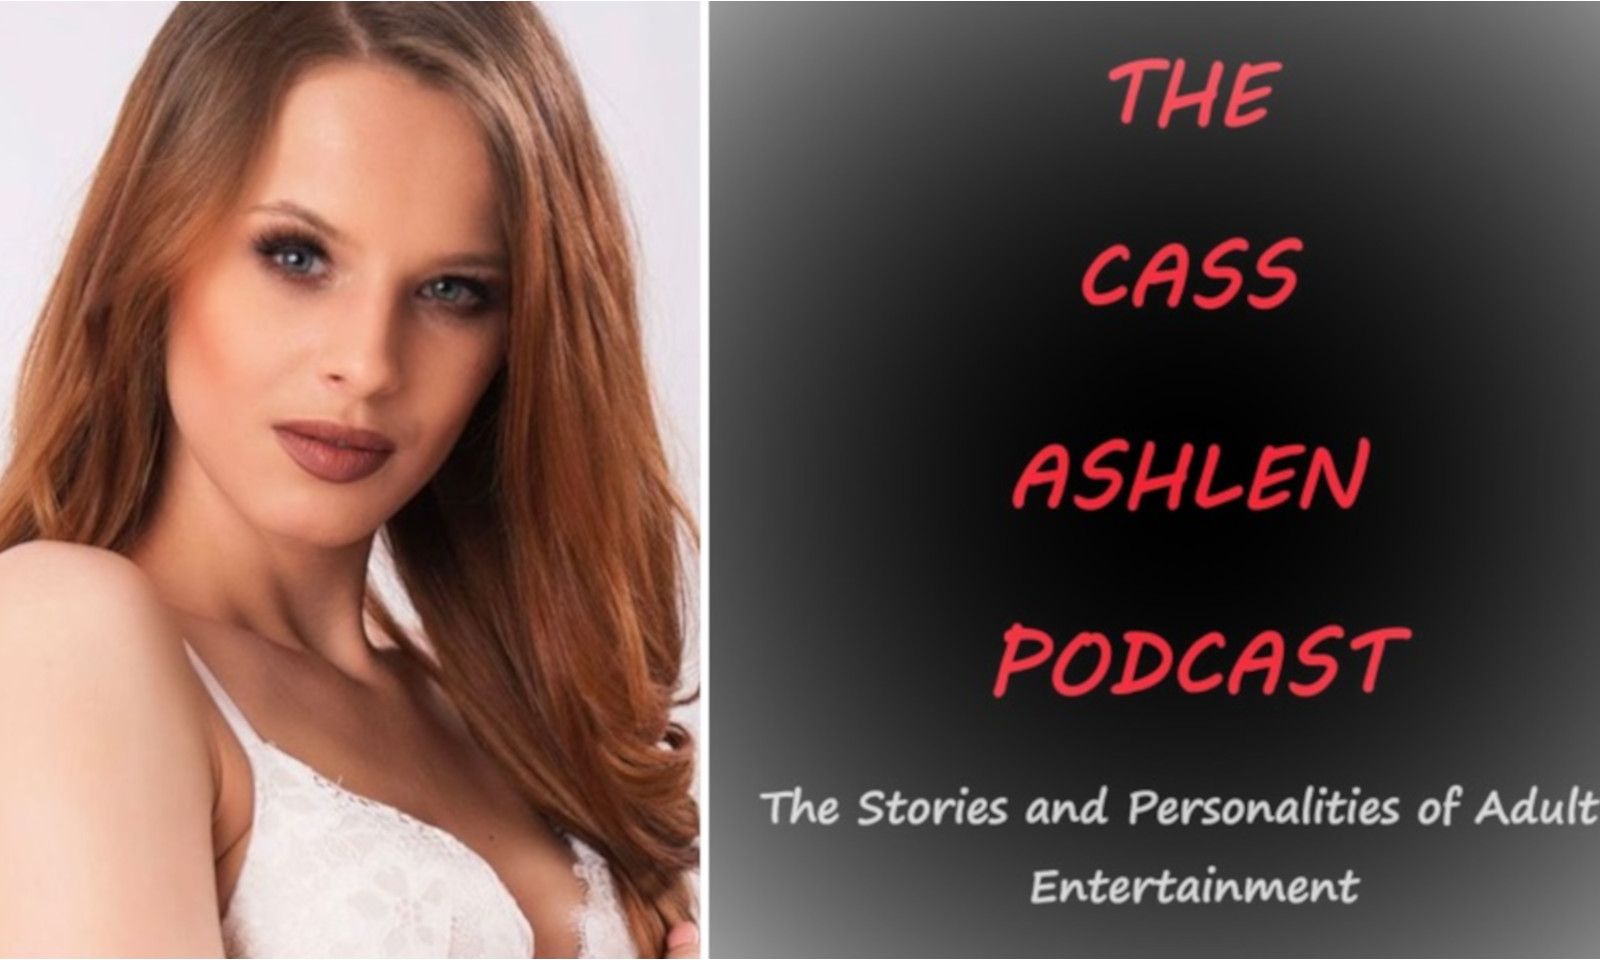 Jillian Janson Guests on 'The Cass Ashlen Podcast'